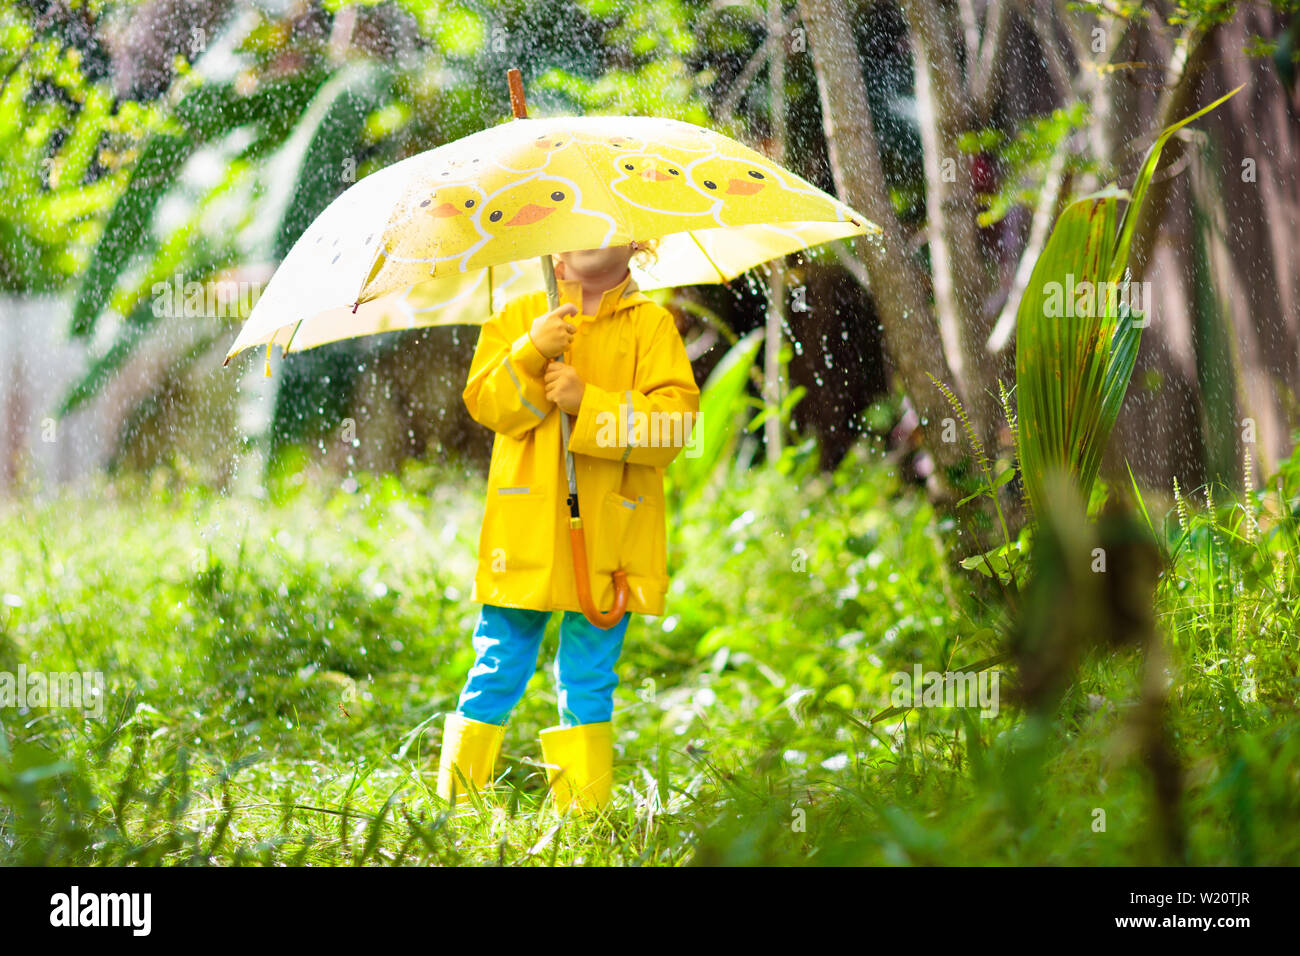 Kinder spielen im Regen an sonnigen Herbsttag. Kind unter schweren Dusche mit gelber Ente Regenschirm. Kleine Junge mit Entlein wasserdichte Schuhe. Gummi wel Stockfoto